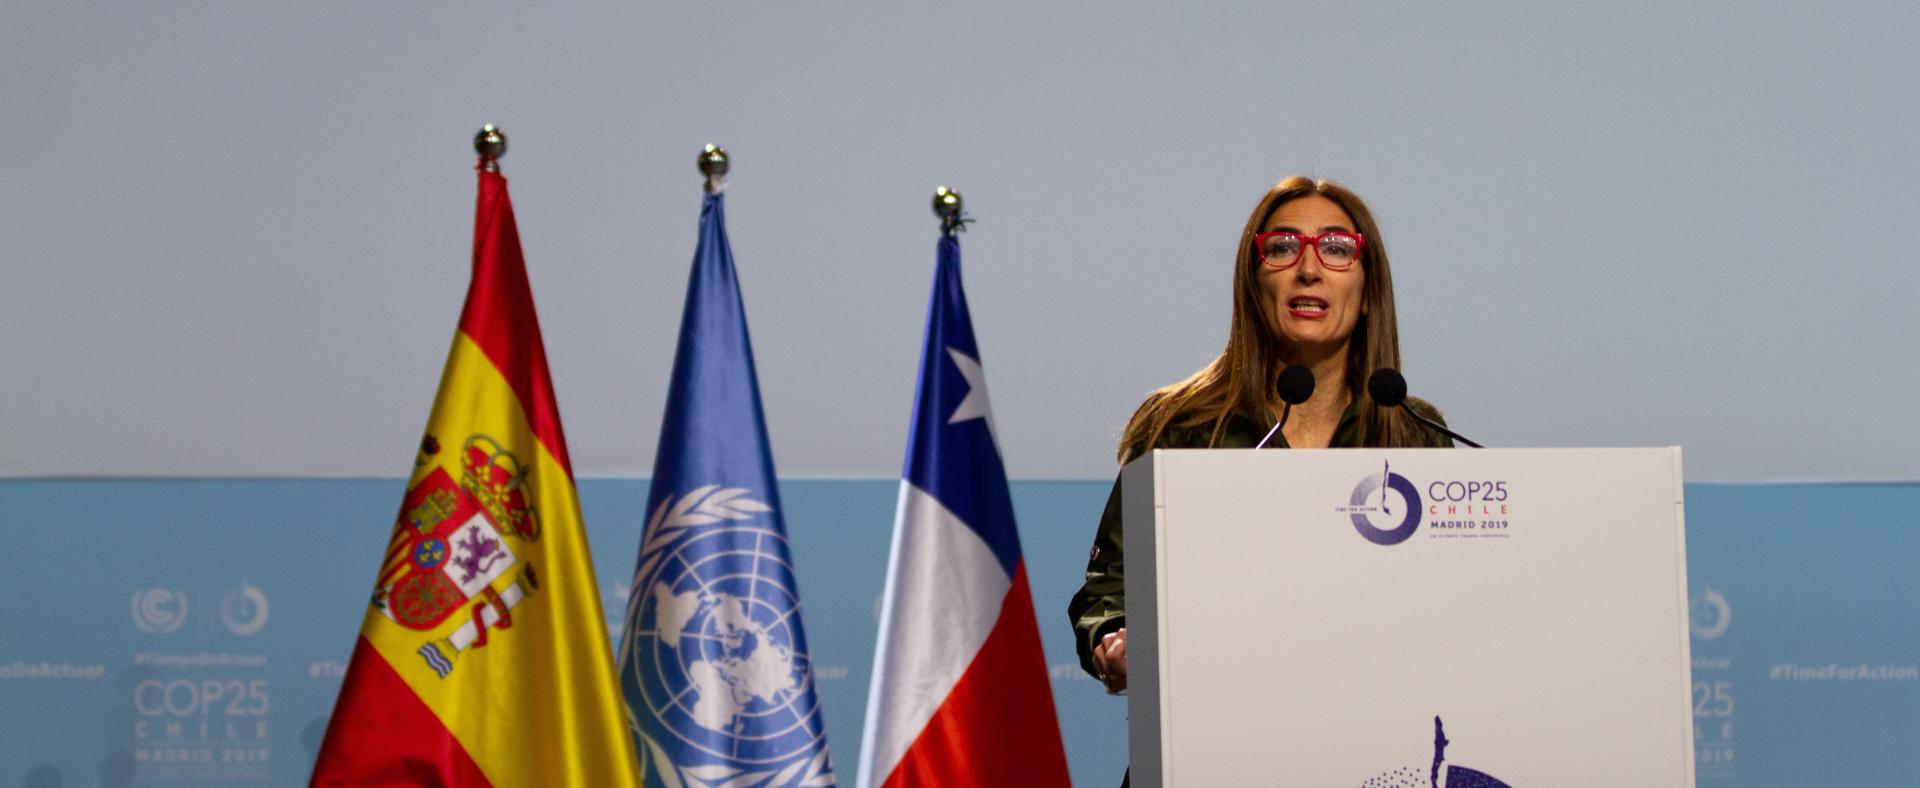 President COP25 Caroline Schmidt